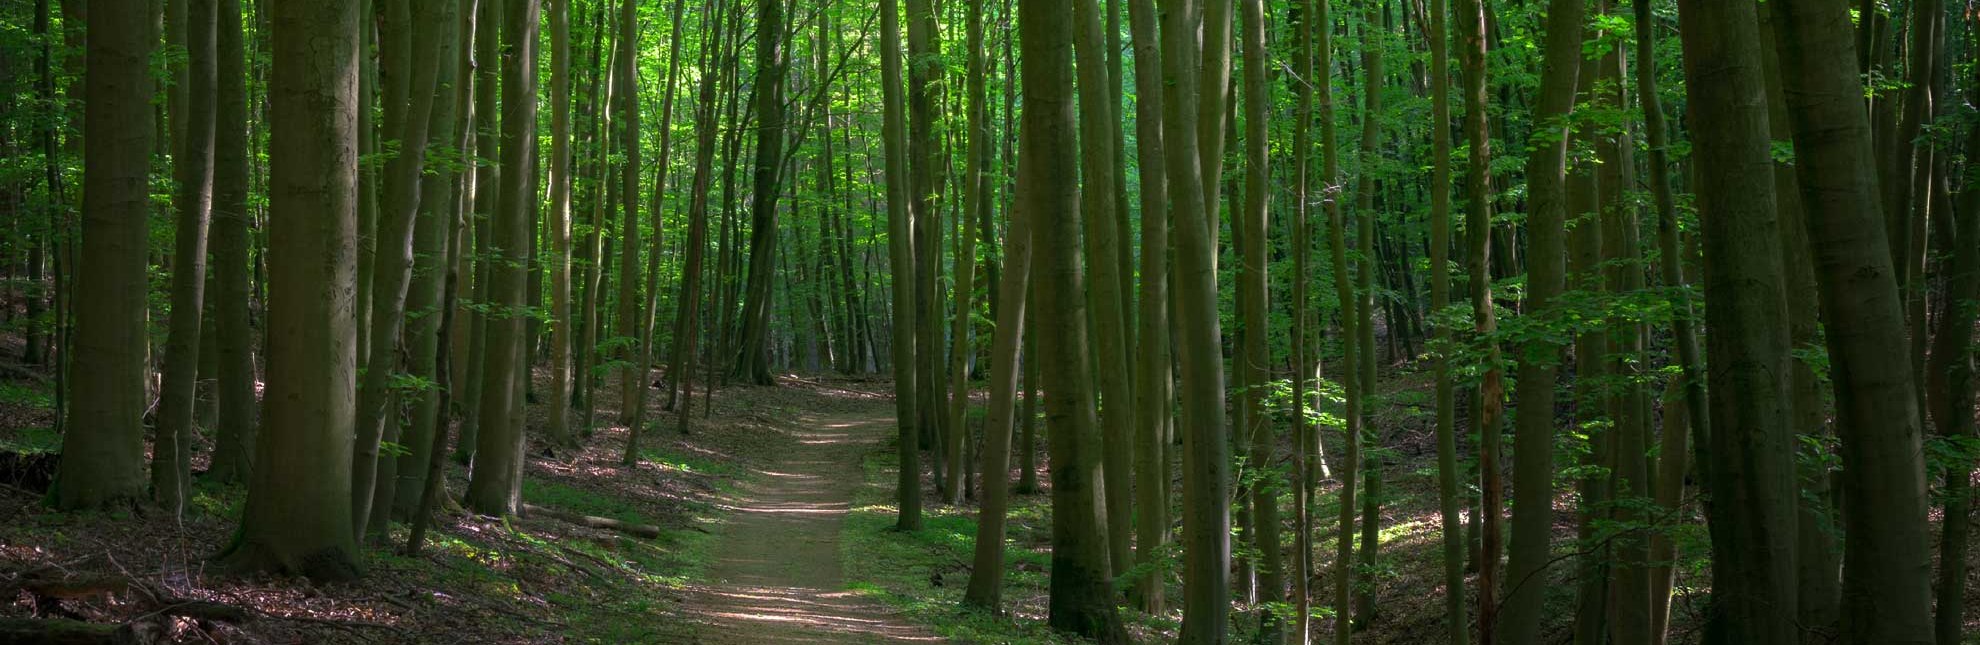 Am Salemer Moor befindet sich ein dichter naturnaher Wald., © Alex K. Media / HLMS GmbH